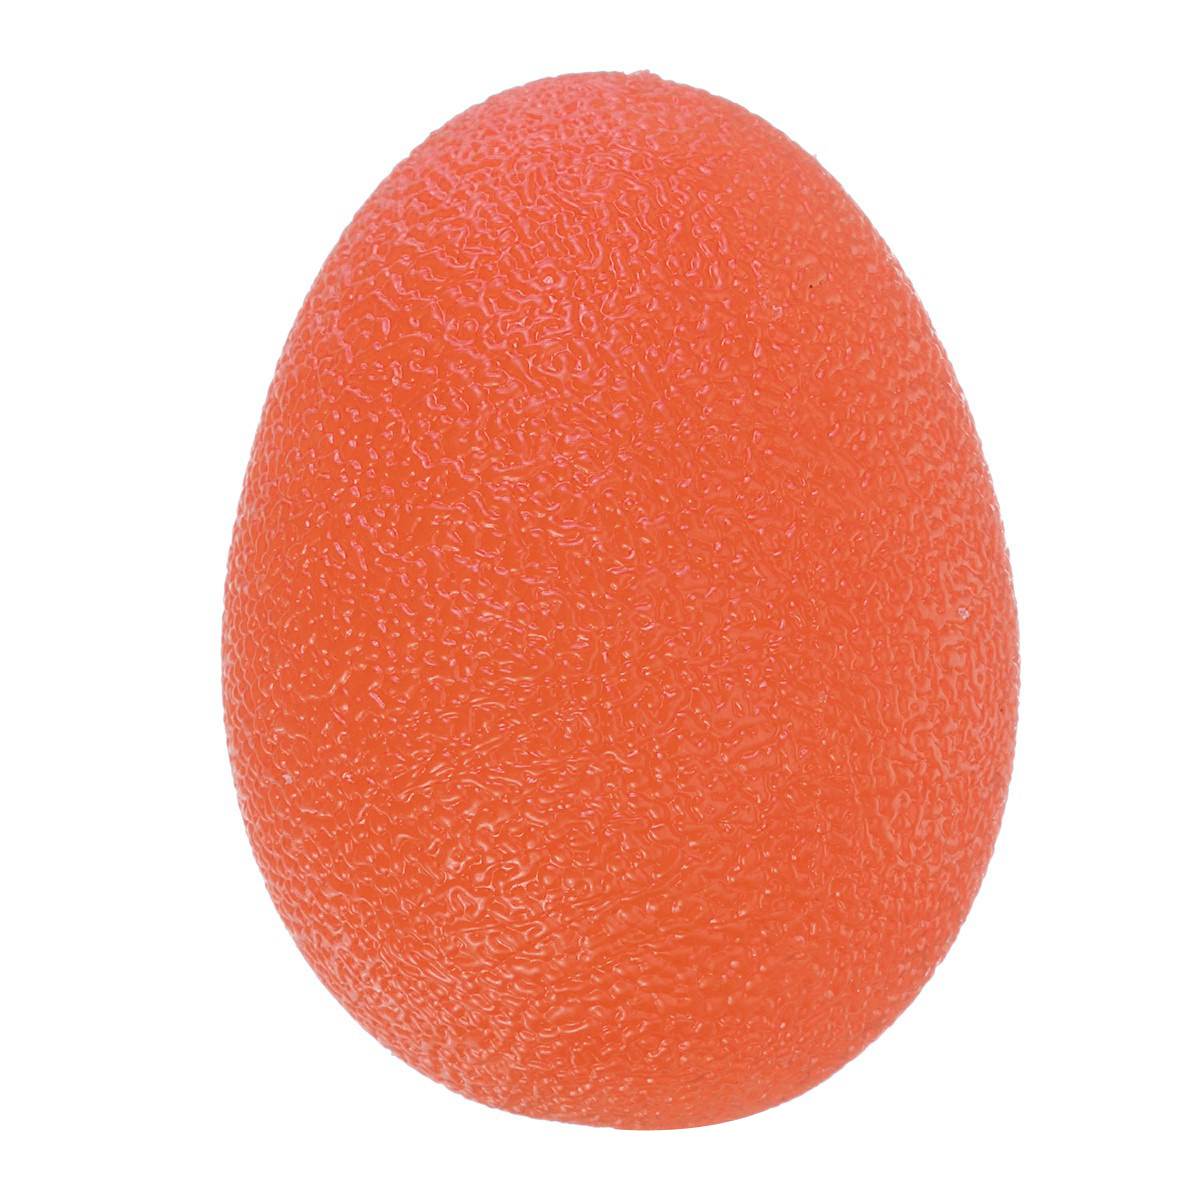 1 stk 58mm ægform stresskugler håndterapi træning klemme kugler stress relief greb forstærker bolde muskeltræning: Orange